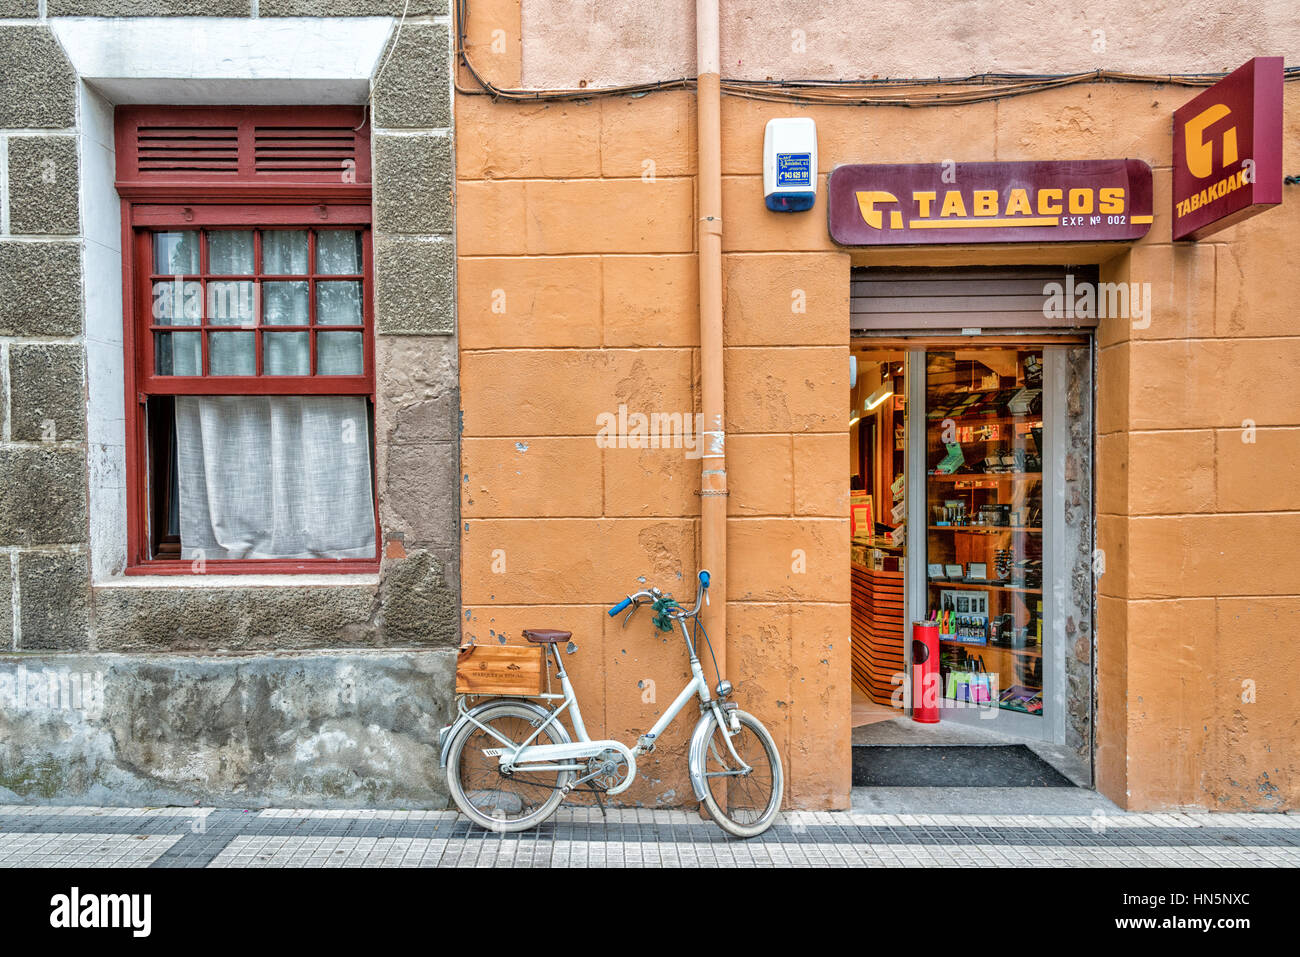 Un vélo stationné à l'extérieur d'un magasin de tabac dans les Picos de Europa en Espagne Banque D'Images